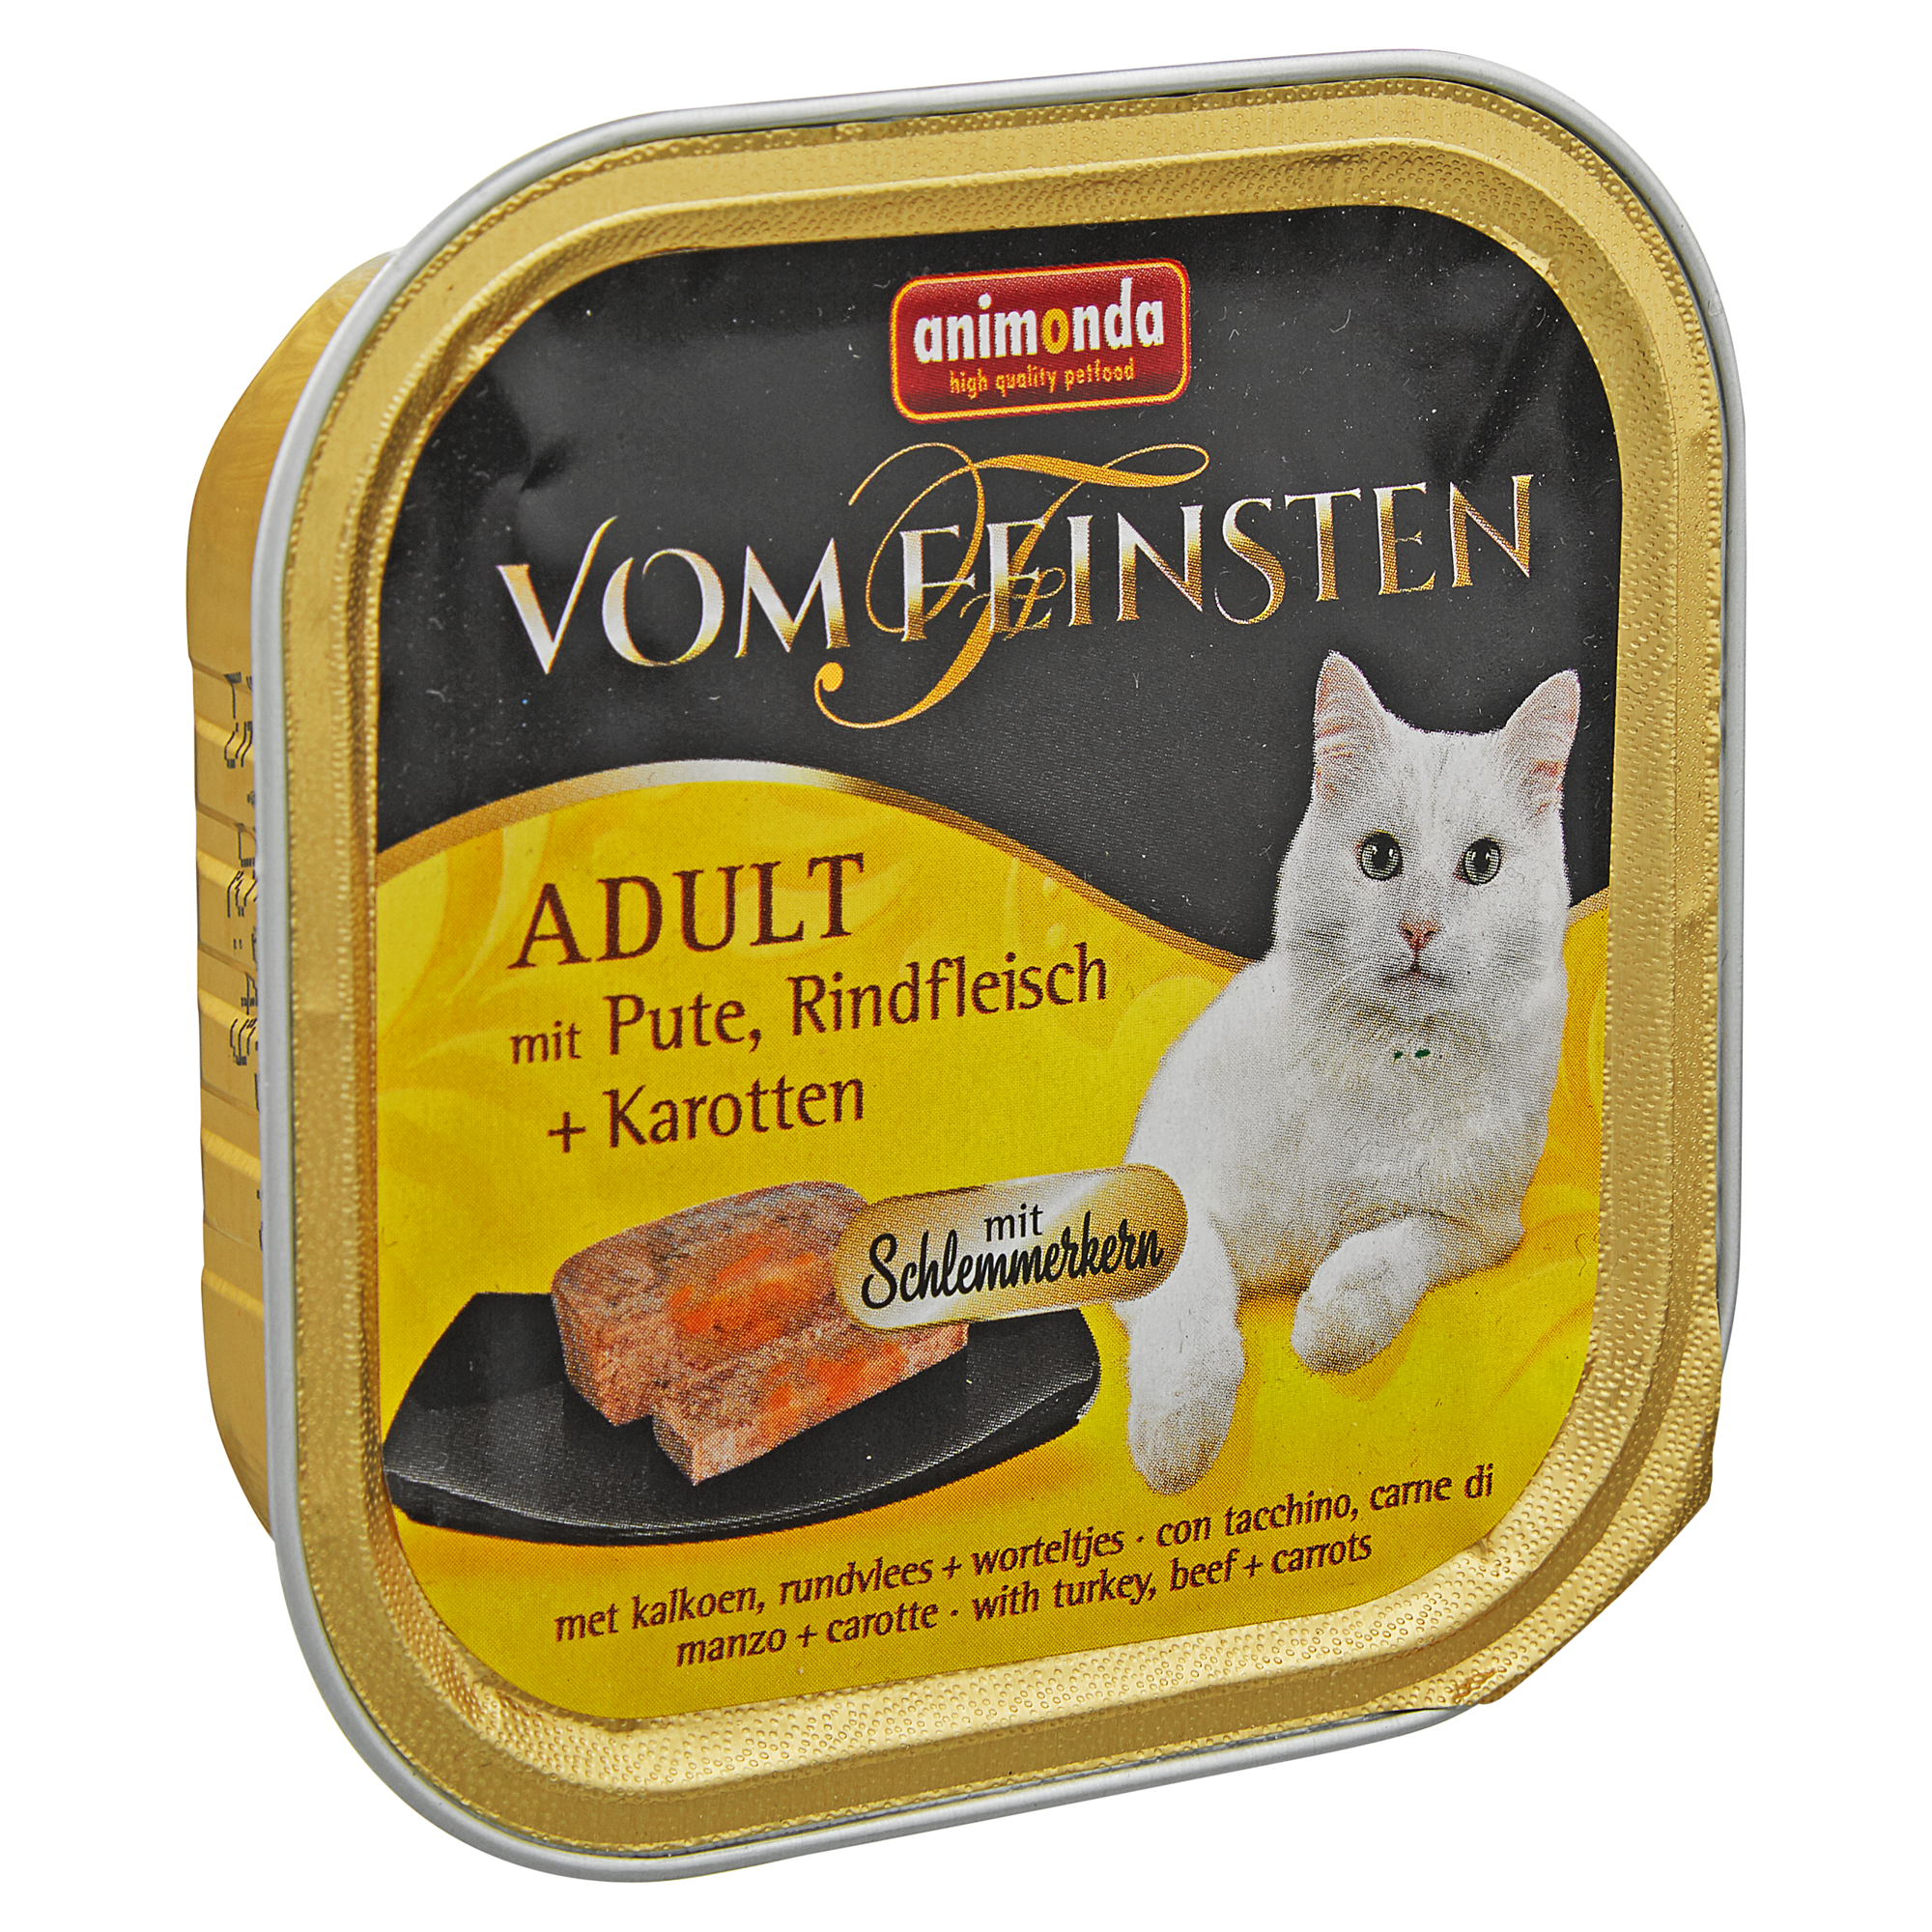 Katzennassfutter "Vom Feinsten" Adult mit Pute/Rindfleisch/Karotten 100 g + product picture